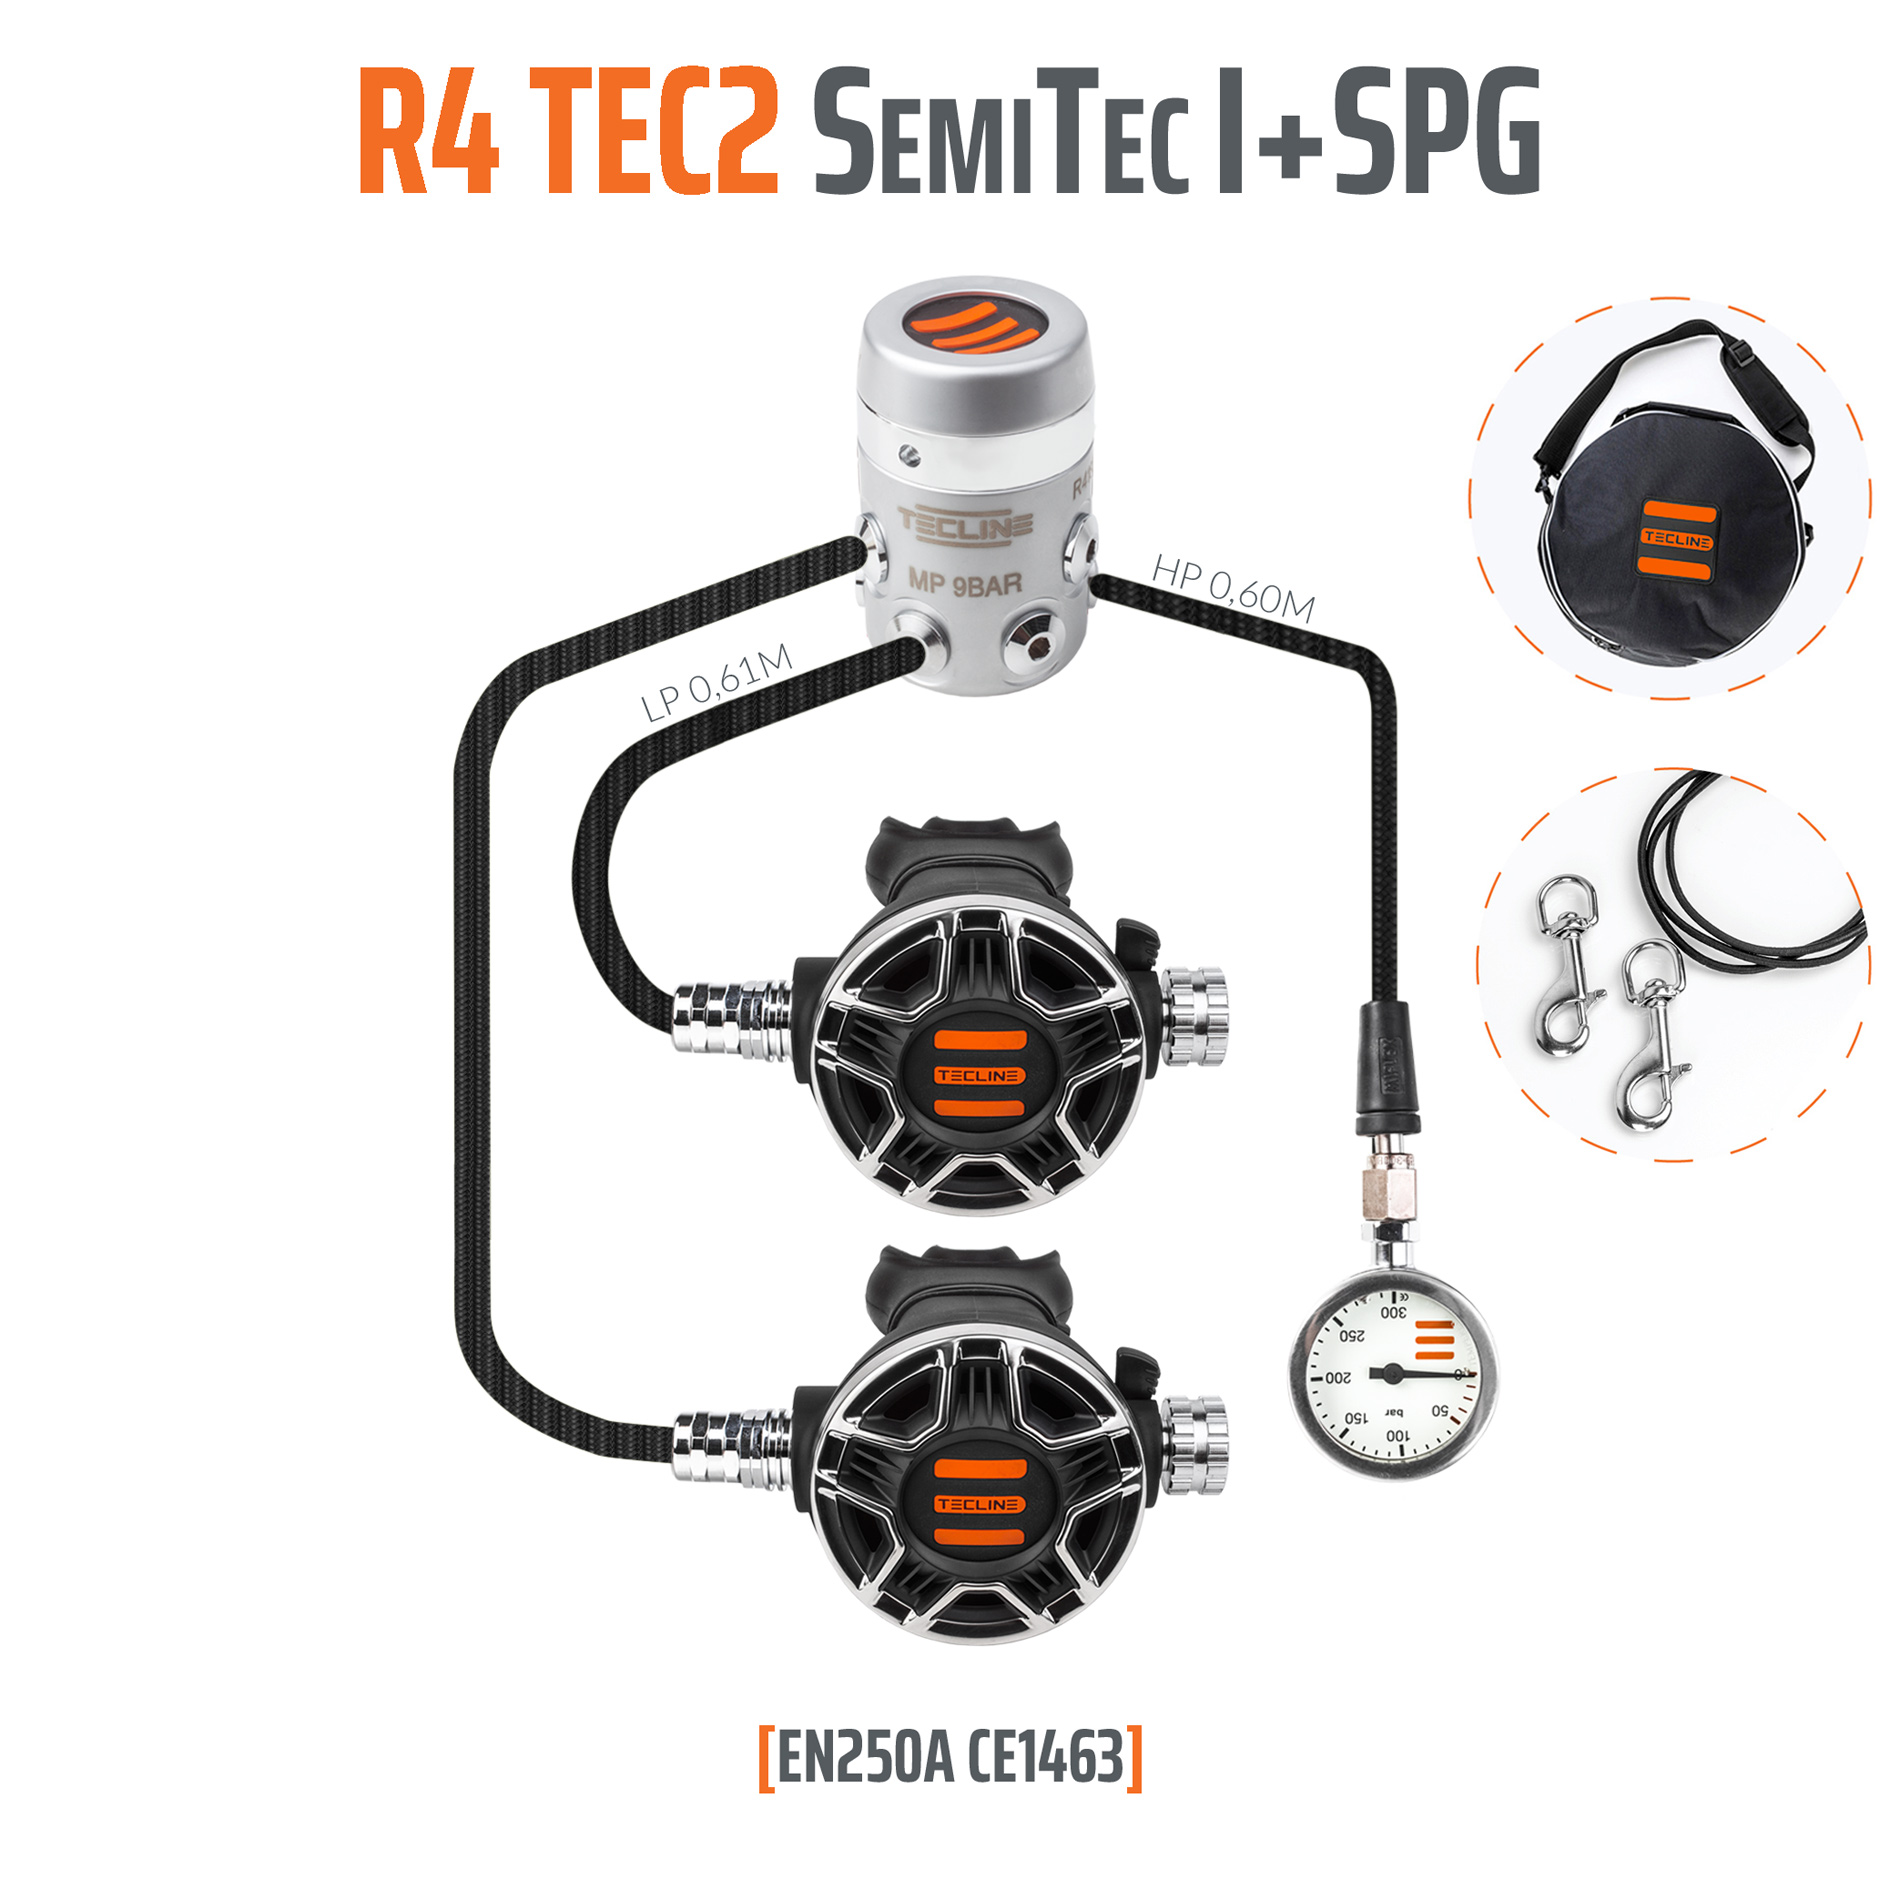 Tecline Regulator R4 TEC2 SemiTec I set with SPG – EN250A